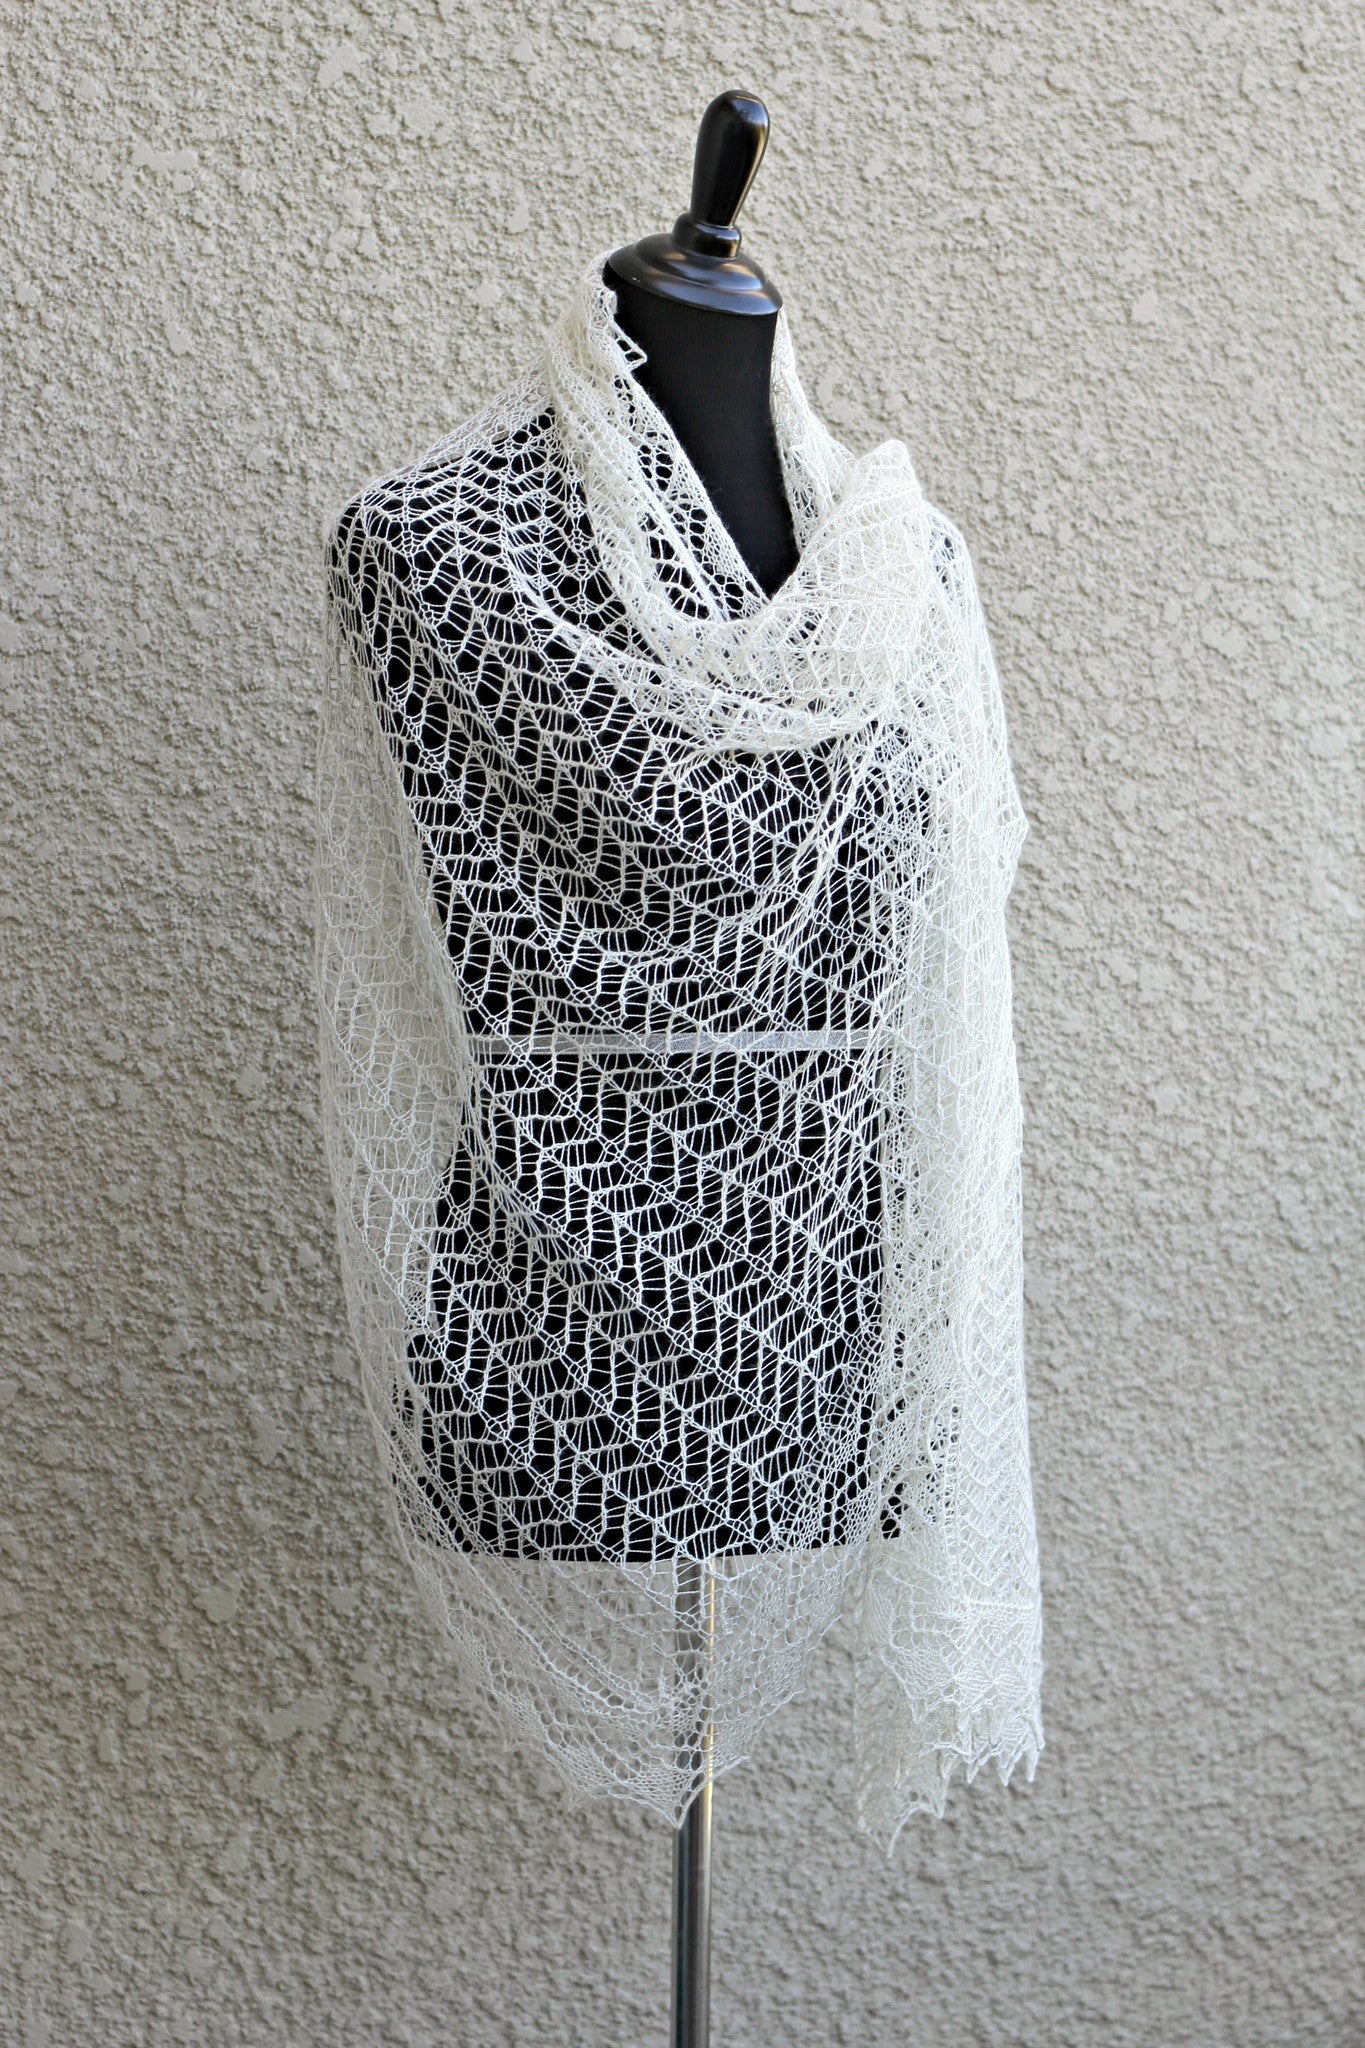 Lace shawl pattern